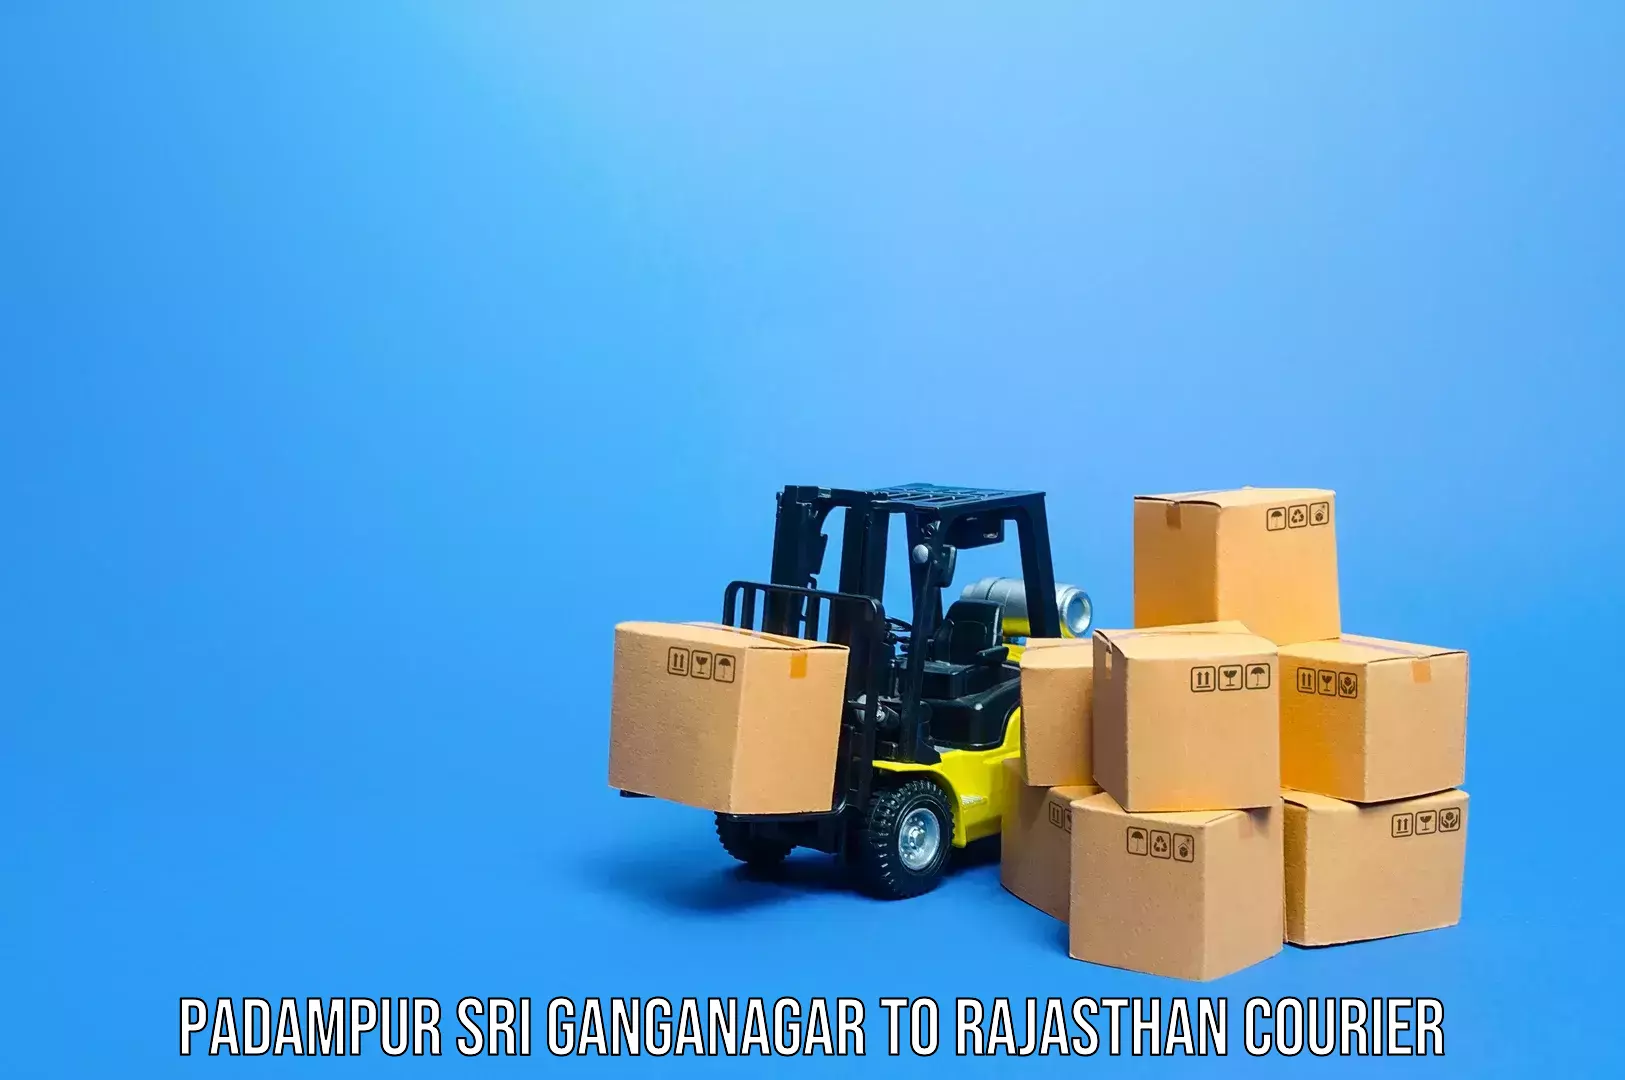 Rural baggage transport Padampur Sri Ganganagar to Bari Dholpur